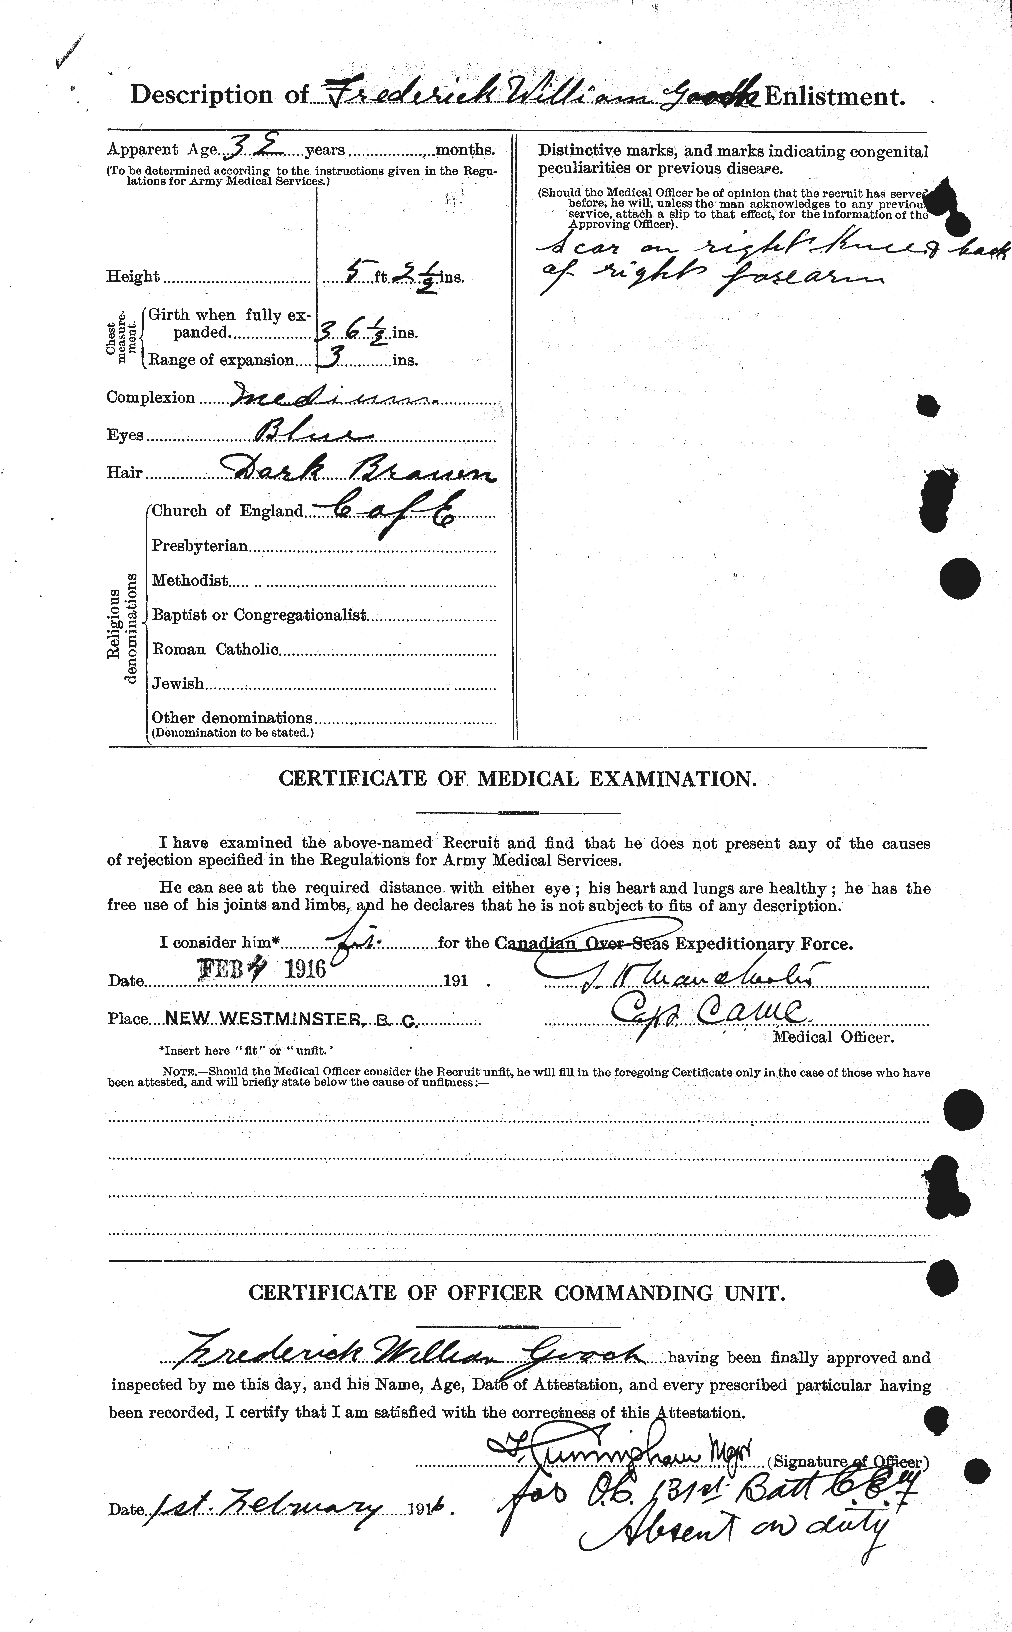 Dossiers du Personnel de la Première Guerre mondiale - CEC 354903b